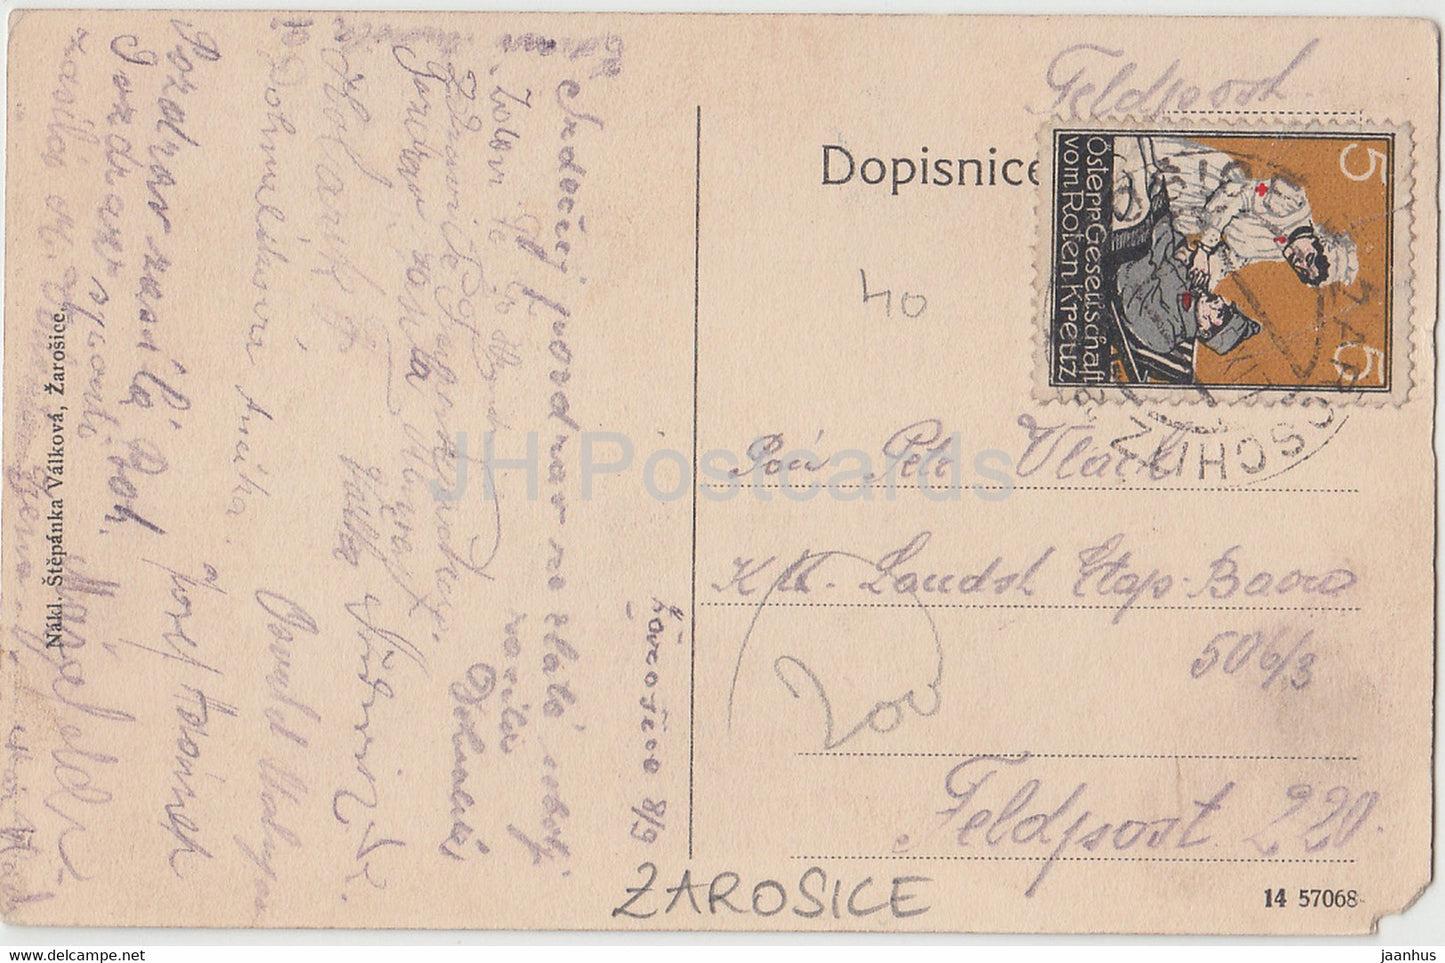 Pozdrav ze Zarosic - Zarosice - Feldpost - carte postale ancienne - République tchèque - utilisé